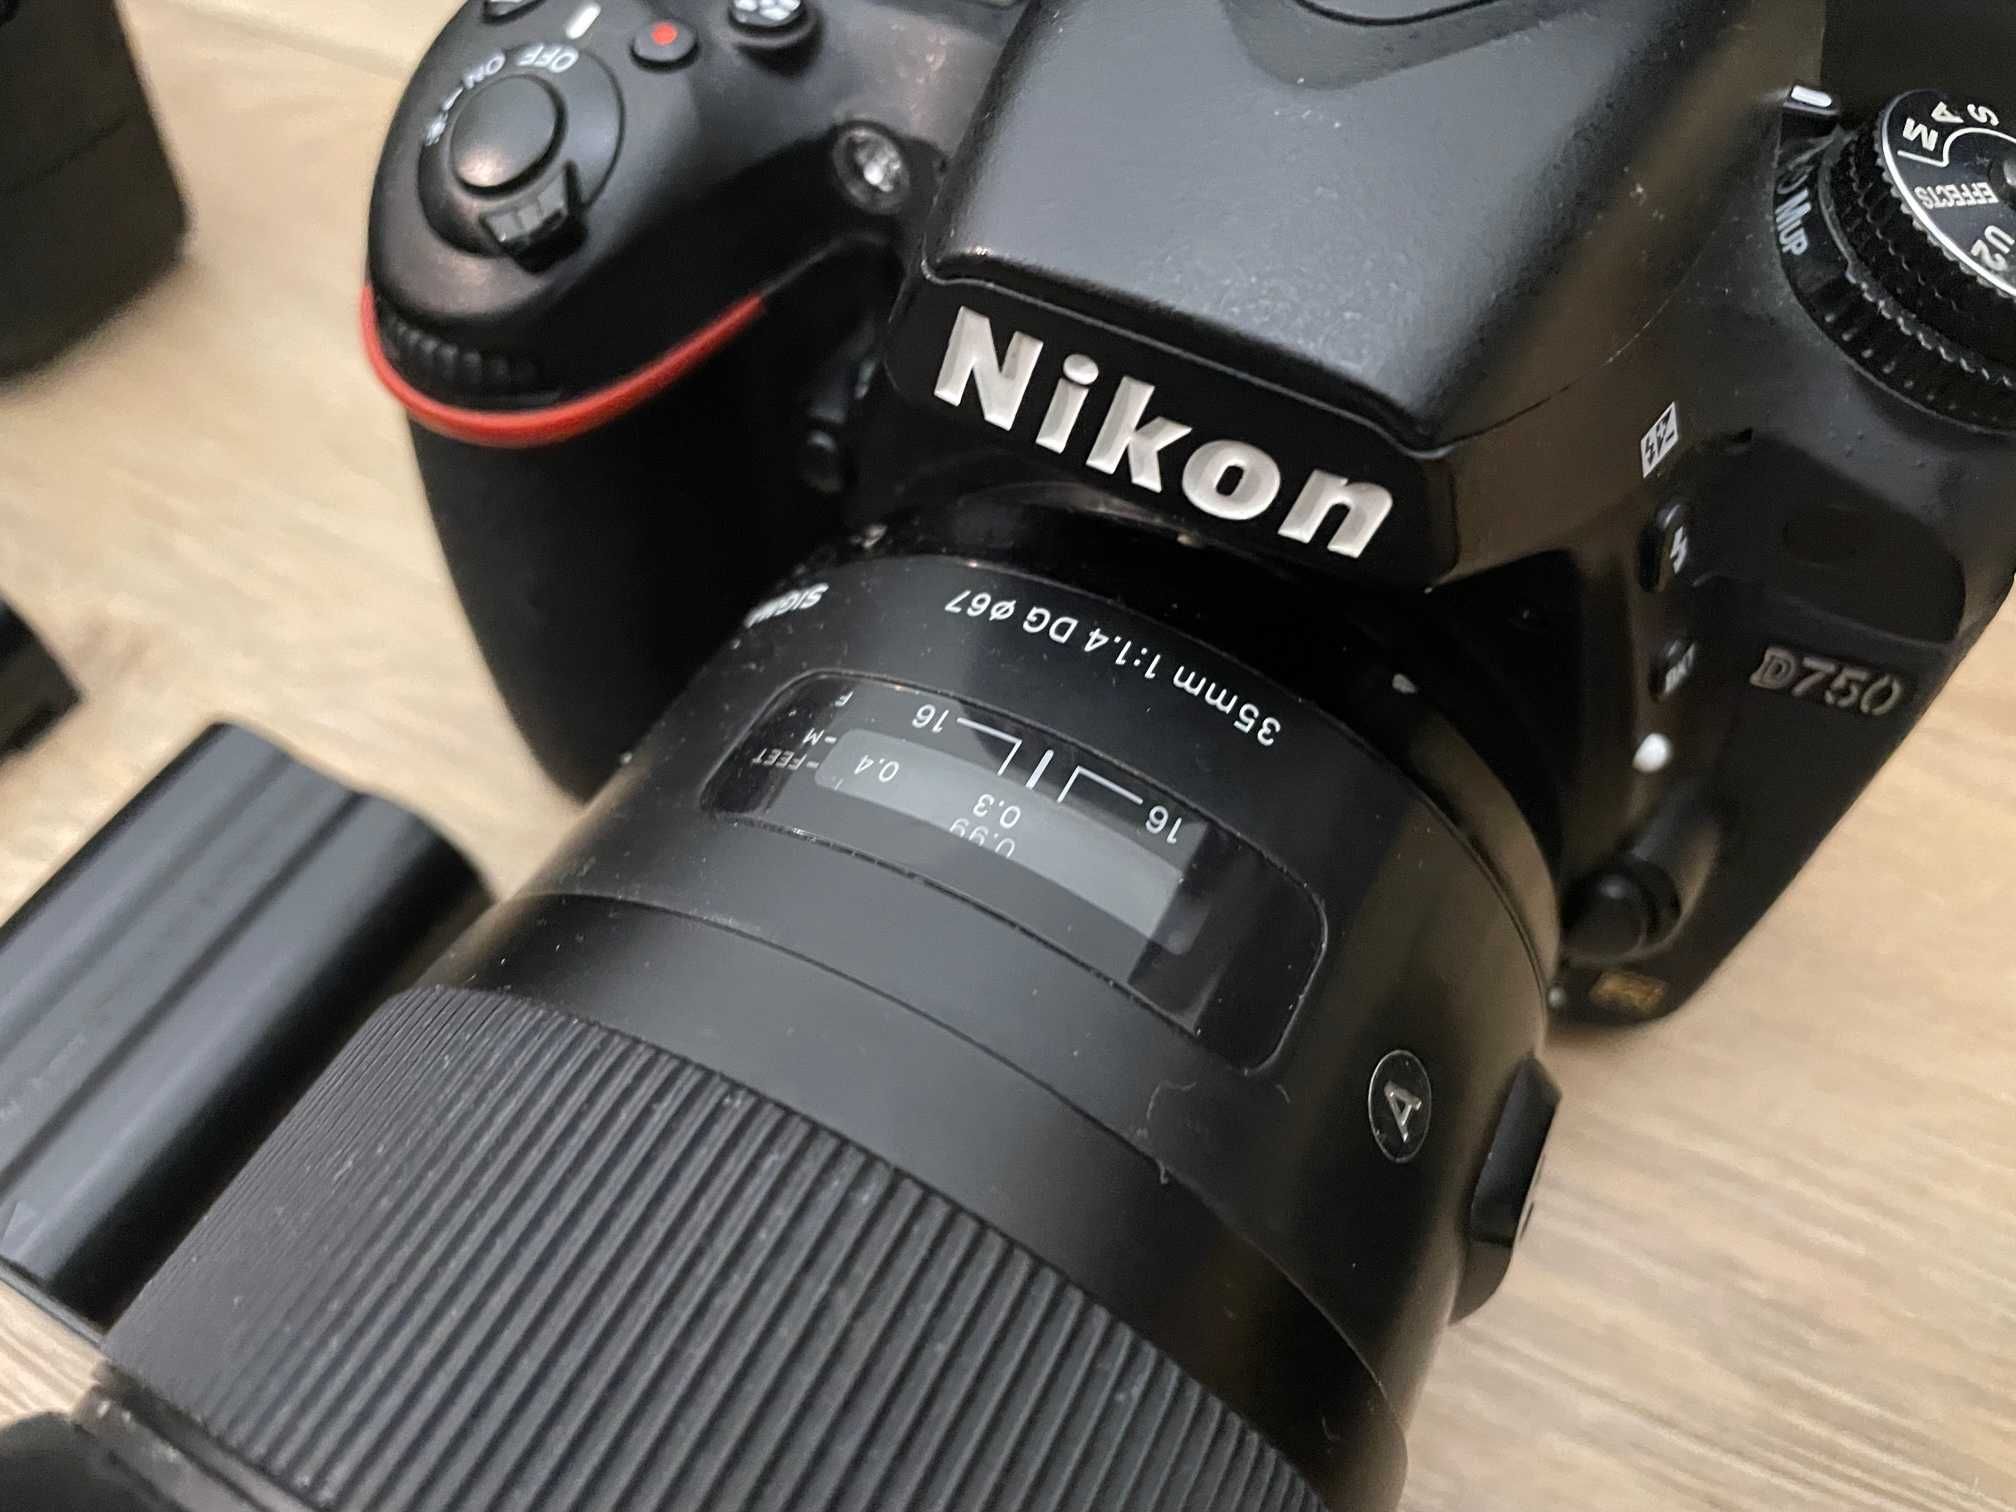 2szt Nikon D750, Sigma Art 85mm 1.4 , Sigma Art 35mm 1.4  6x32gb